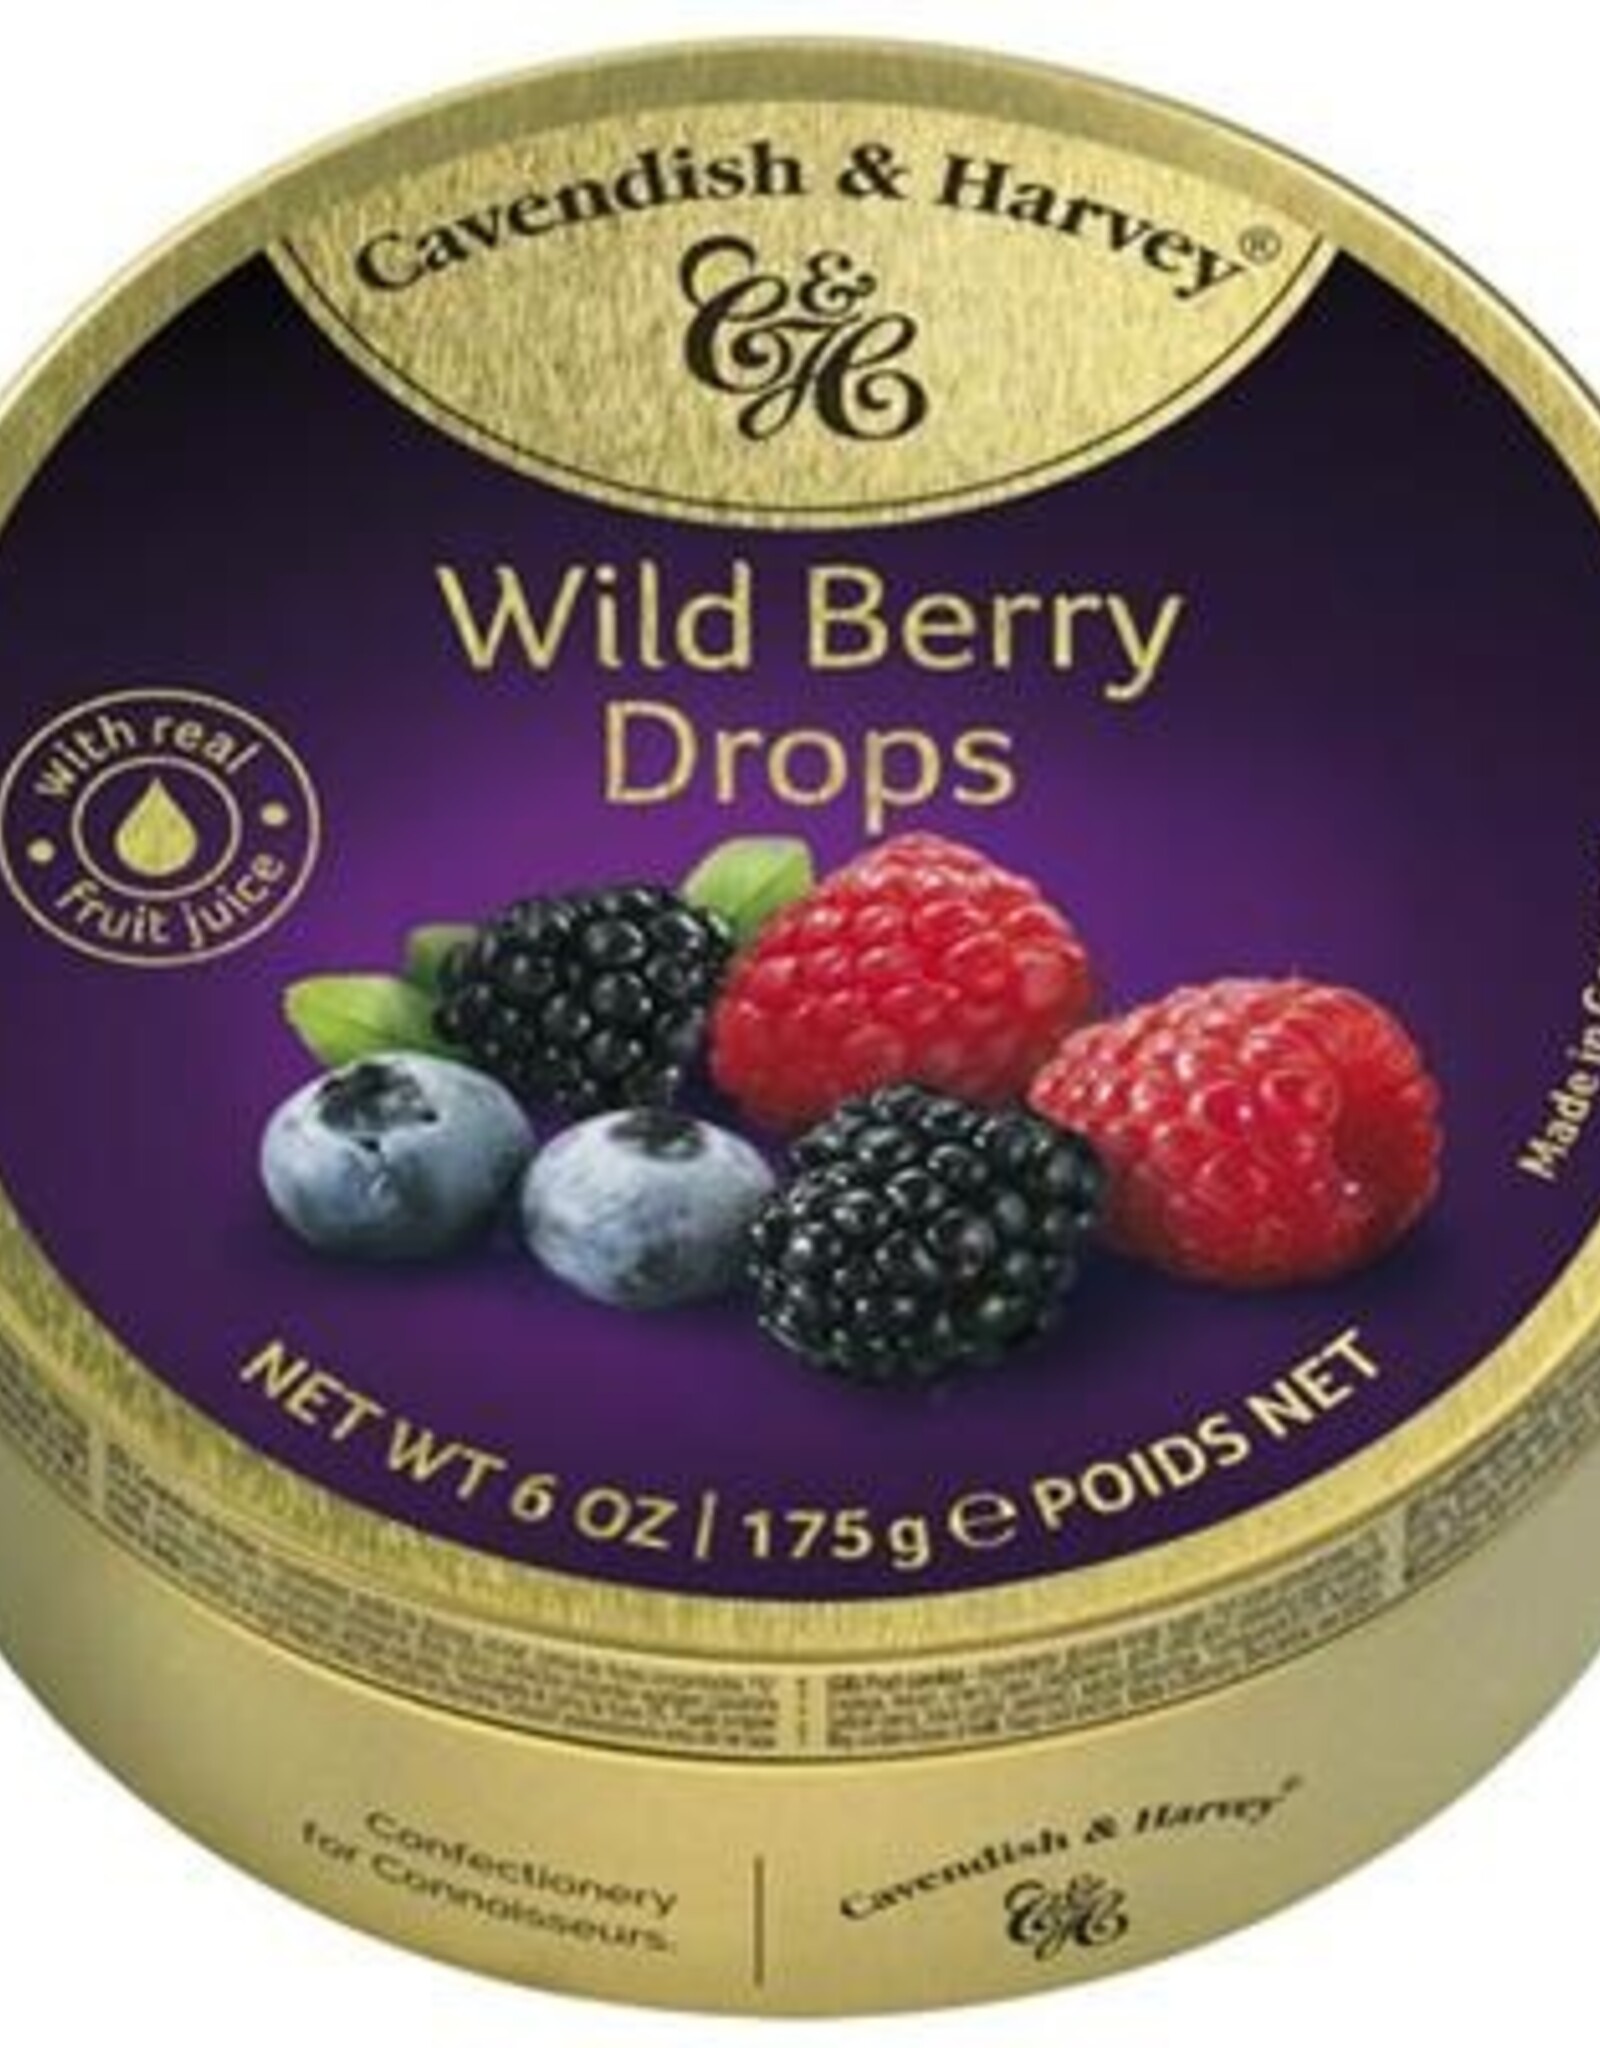 tea and herbs Cavendish & Harvey wild berrie drops (met echt vruchtensap)